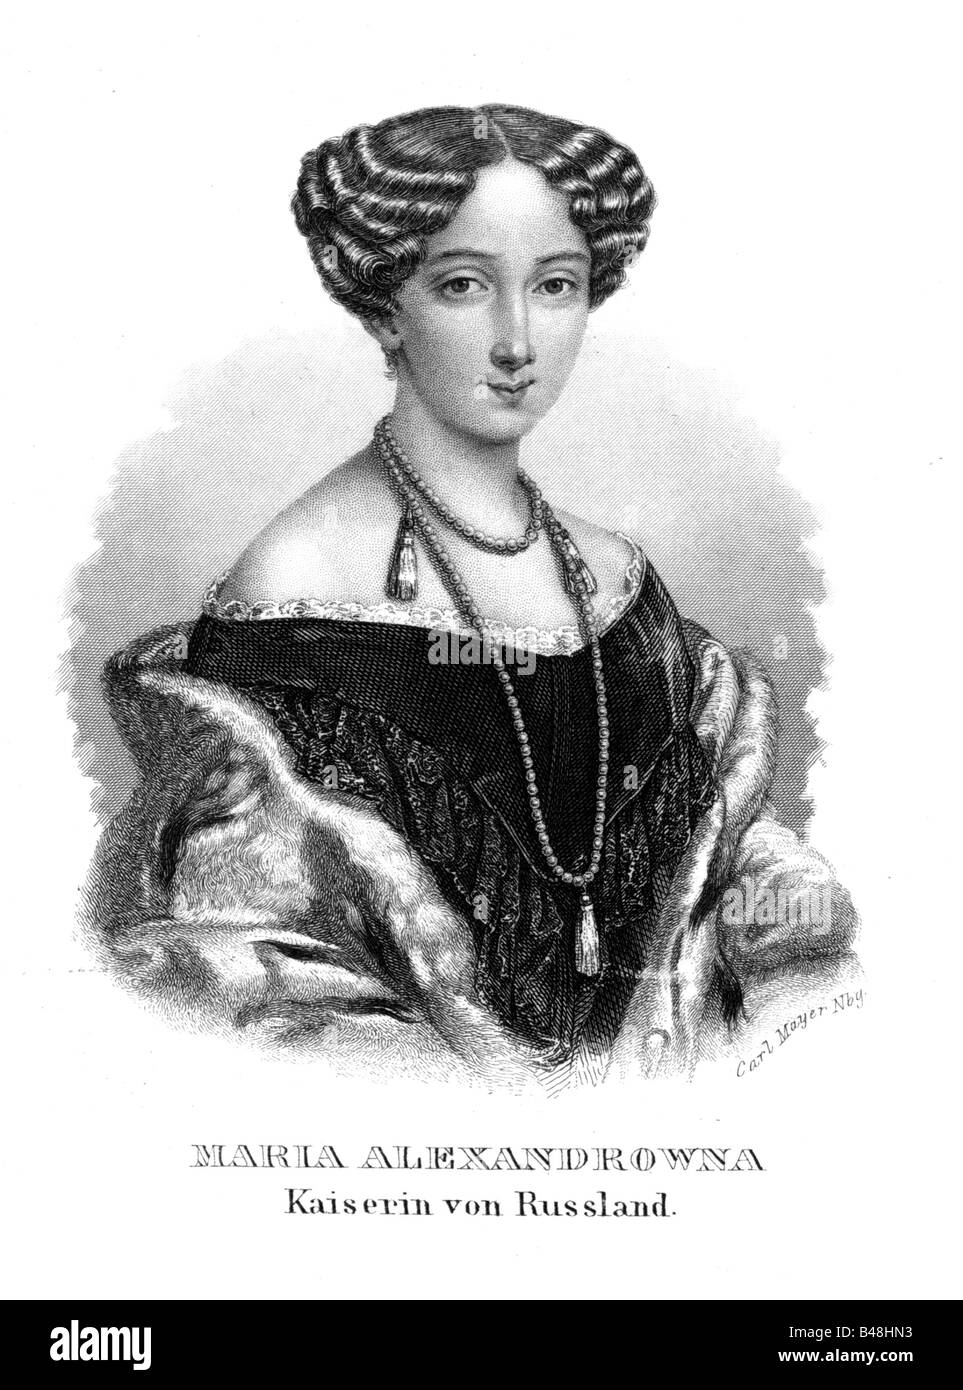 Maria Alexandrovna, 8.8.1824 - 3.6.1880, imperatrice di Russia 18.2.1855 - 3.6.1880, ritratto, acciaio, incisione del XIX secolo , artista del diritto d'autore non deve essere cancellata Foto Stock